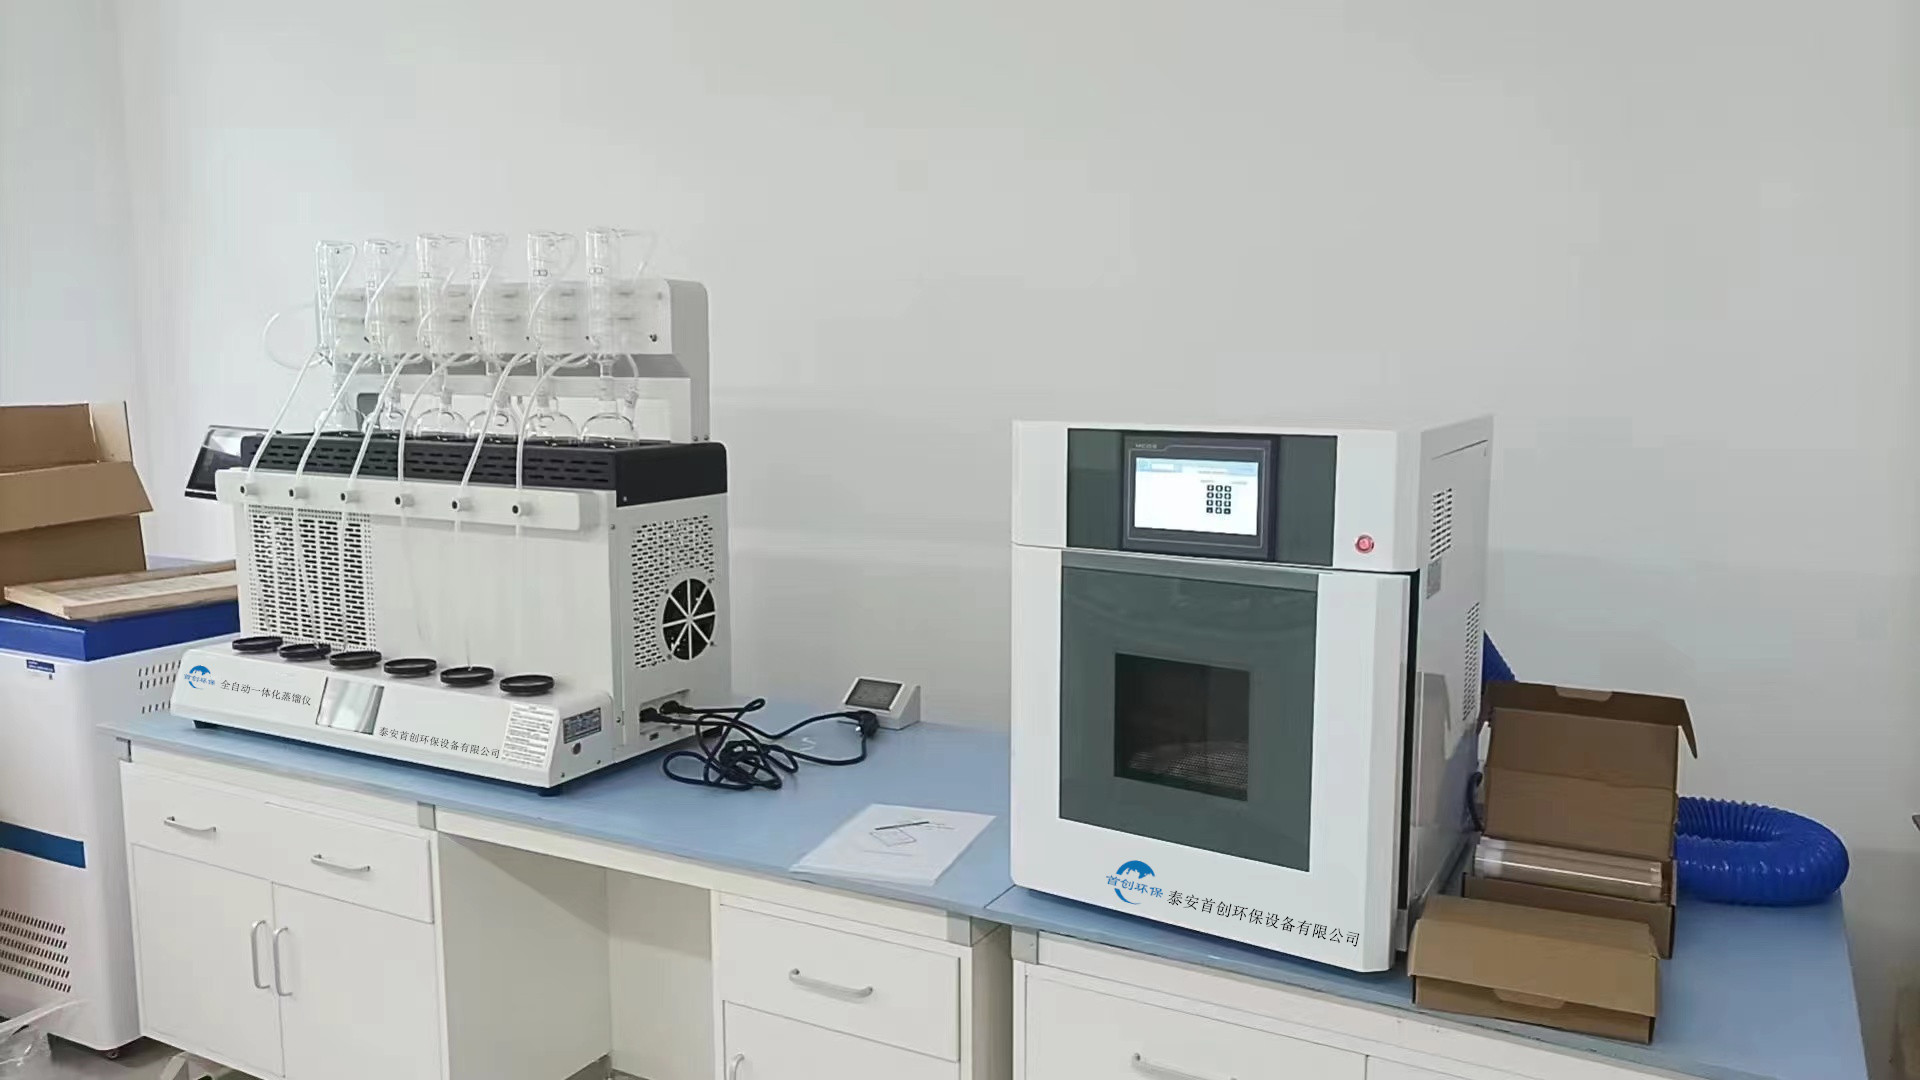 全自动一体化蒸馏仪及高通量智能微波消解仪安装于第三方检测公司